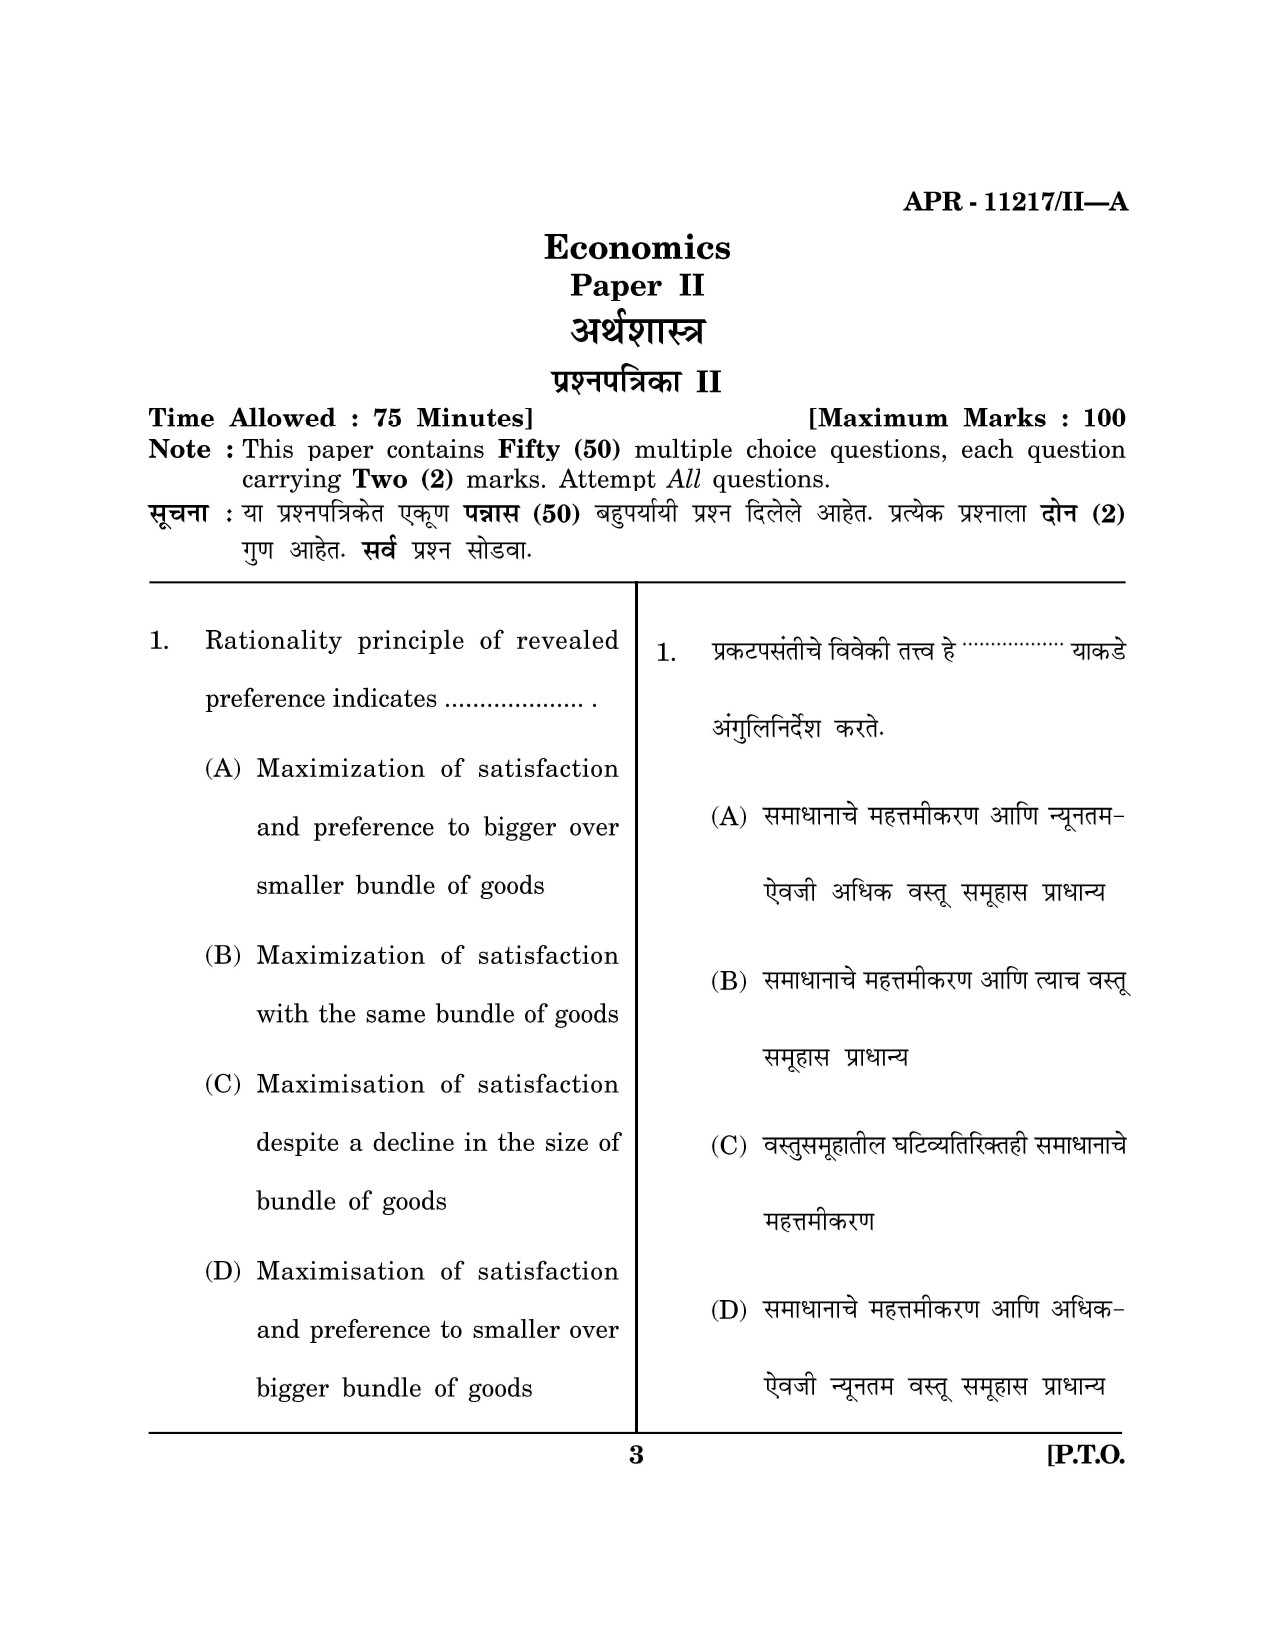 Maharashtra SET Economics Question Paper II April 2017 2